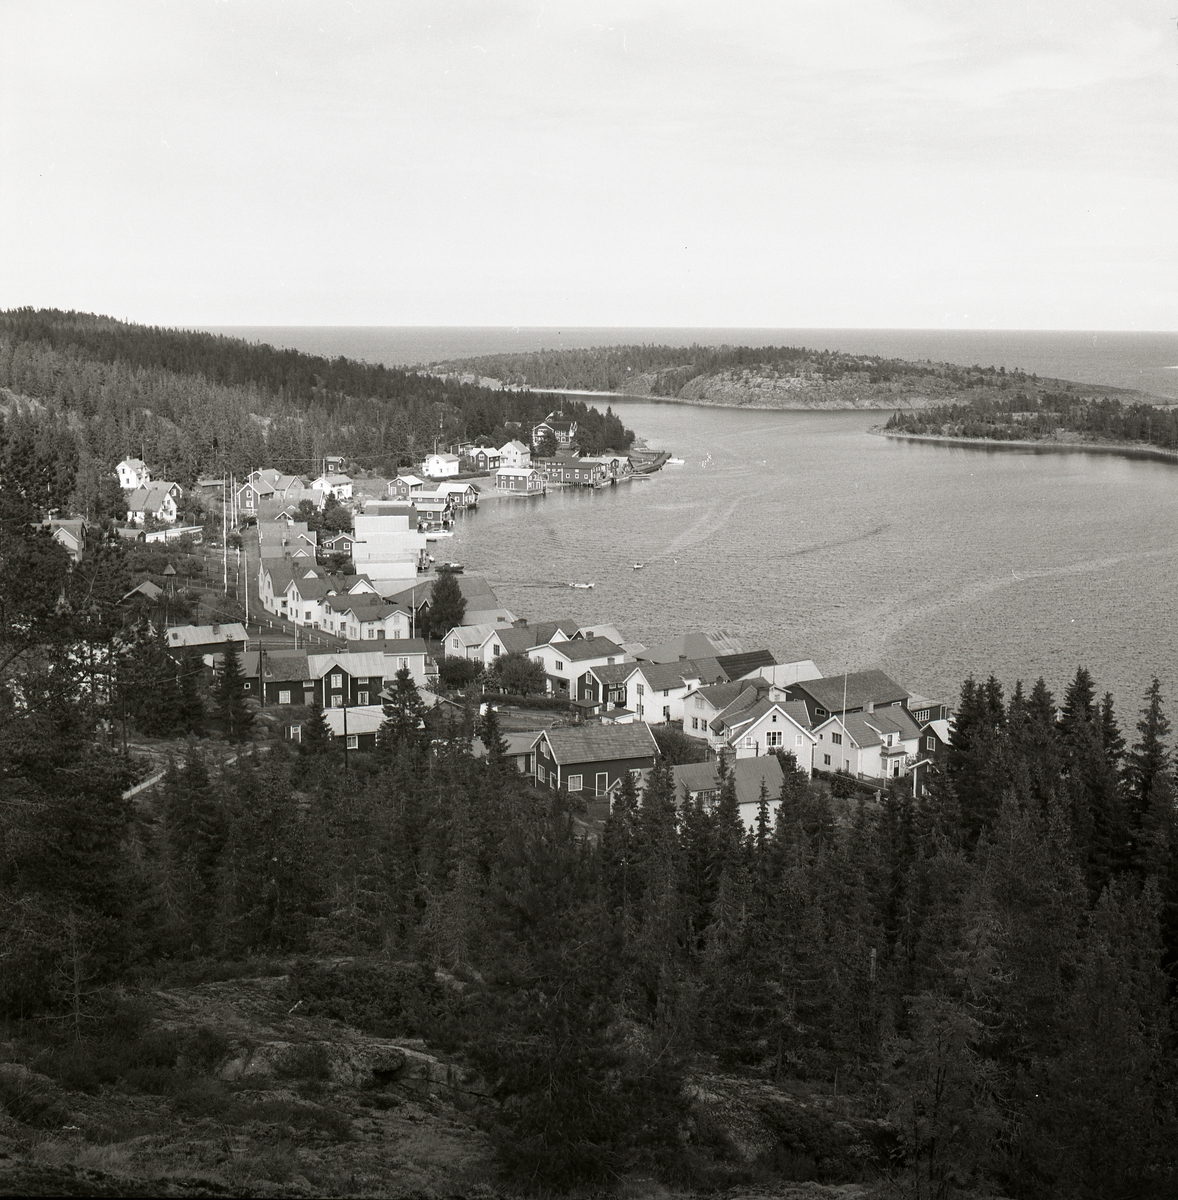 Utsikt över en vik eller hamn med bostadshus, fiskeläge och skog, Ulvön 1974.